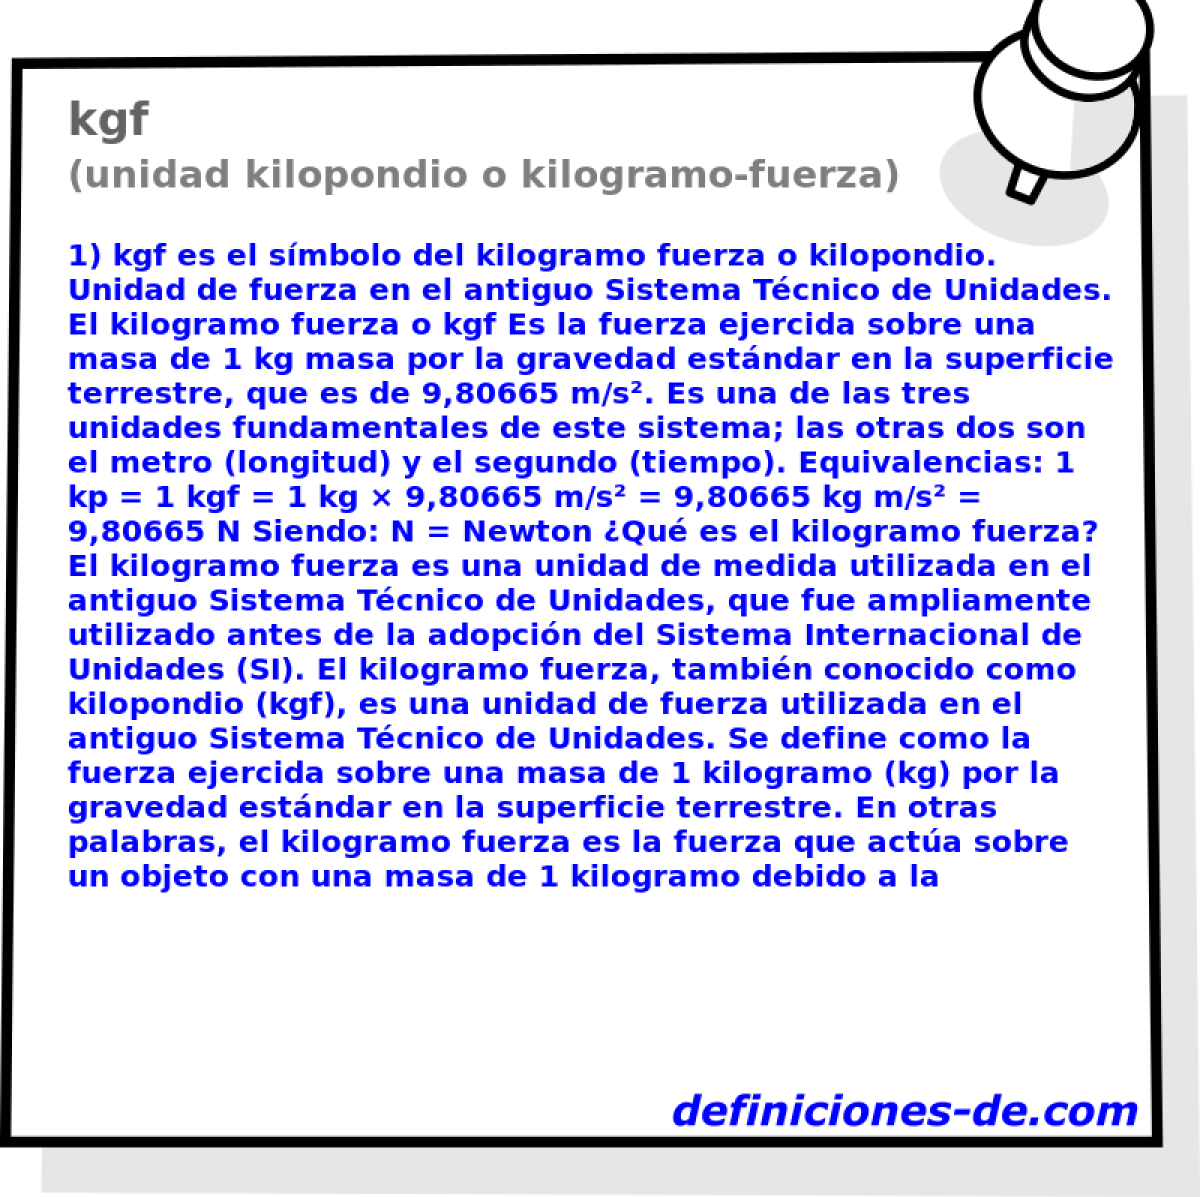 kgf (unidad kilopondio o kilogramo-fuerza)